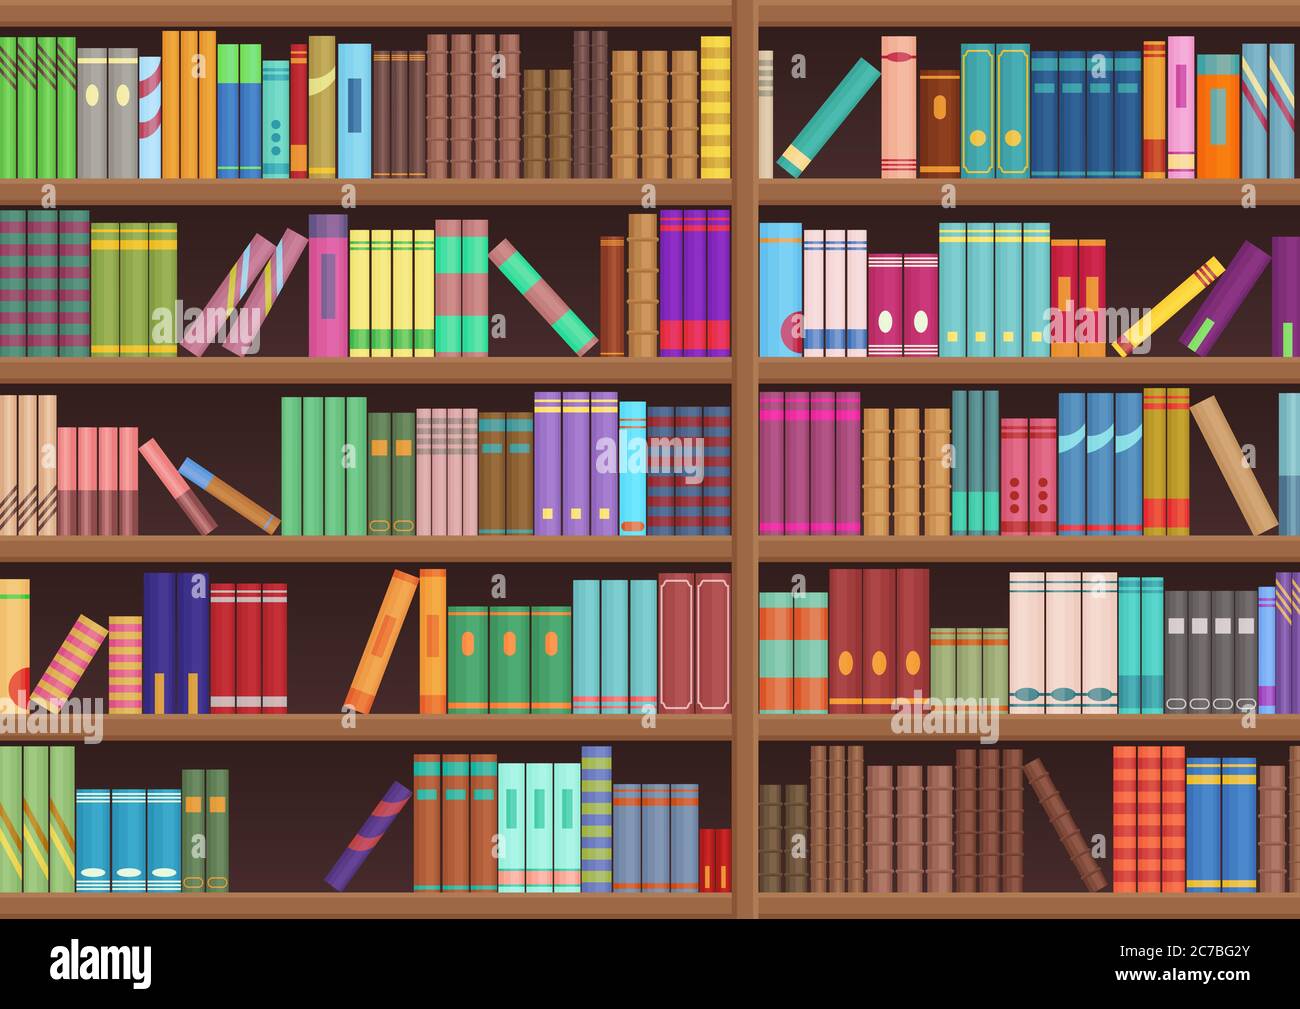 Tìm hiểu về văn học qua những cuốn sách trong thư viện kệ sách vector đầy màu sắc và đa dạng chủ đề. Cùng khám phá các tác phẩm văn học kinh điển và những tác giả nổi tiếng thế giới trong không gian thư giãn ấm áp của thư viện.